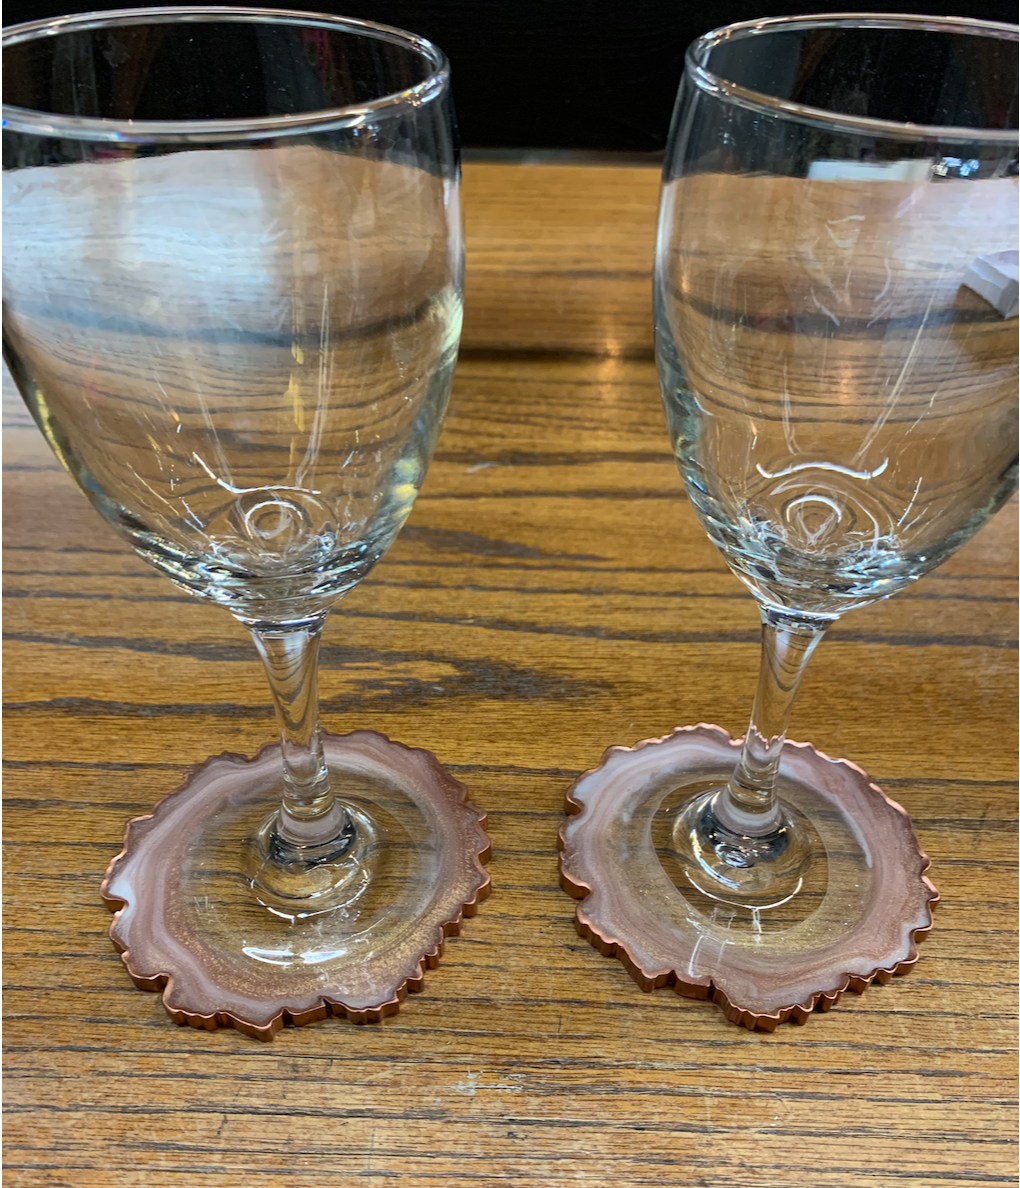 Geode Wineglasses by Llama Sisters Designs